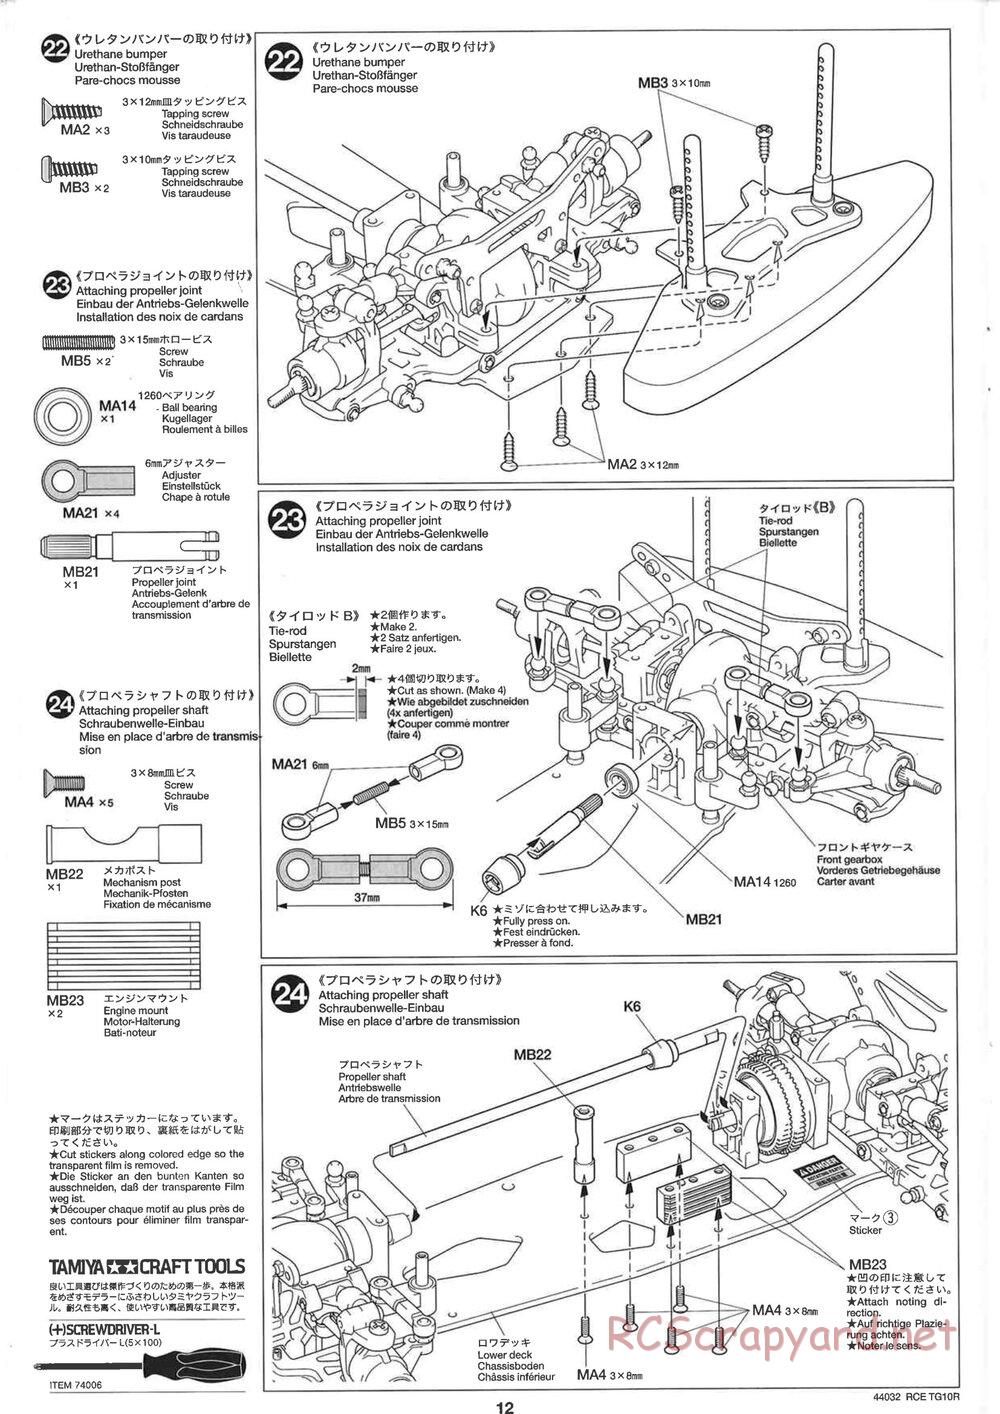 Tamiya - TG10R Chassis - Manual - Page 12